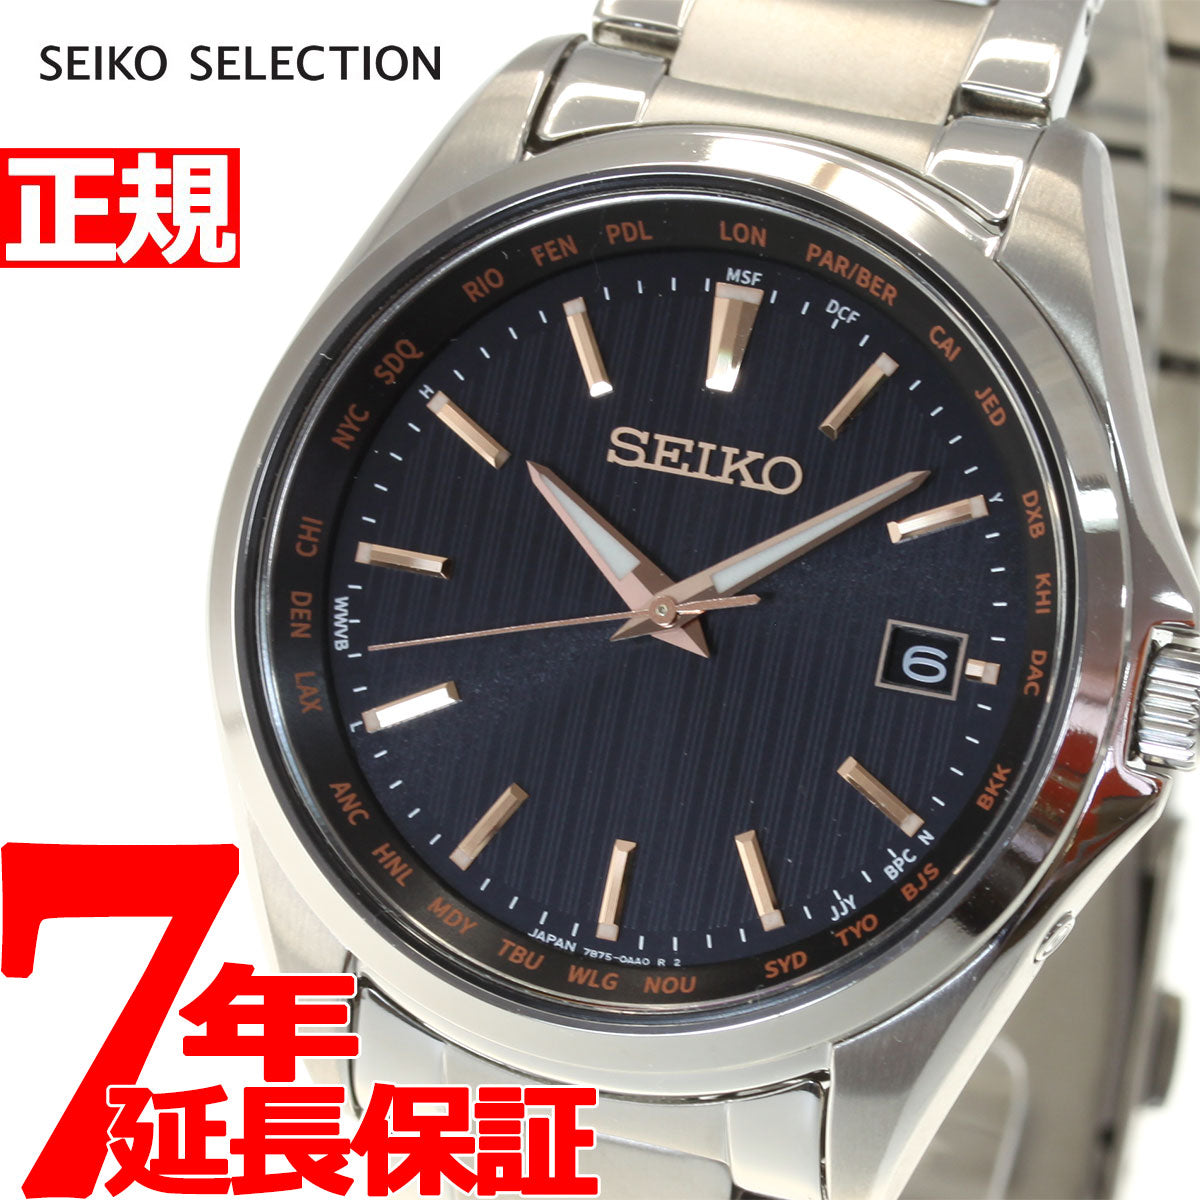 セイコー セレクション SEIKO SELECTION 電波 ソーラー 電波時計 腕時計 メンズ SBTM293